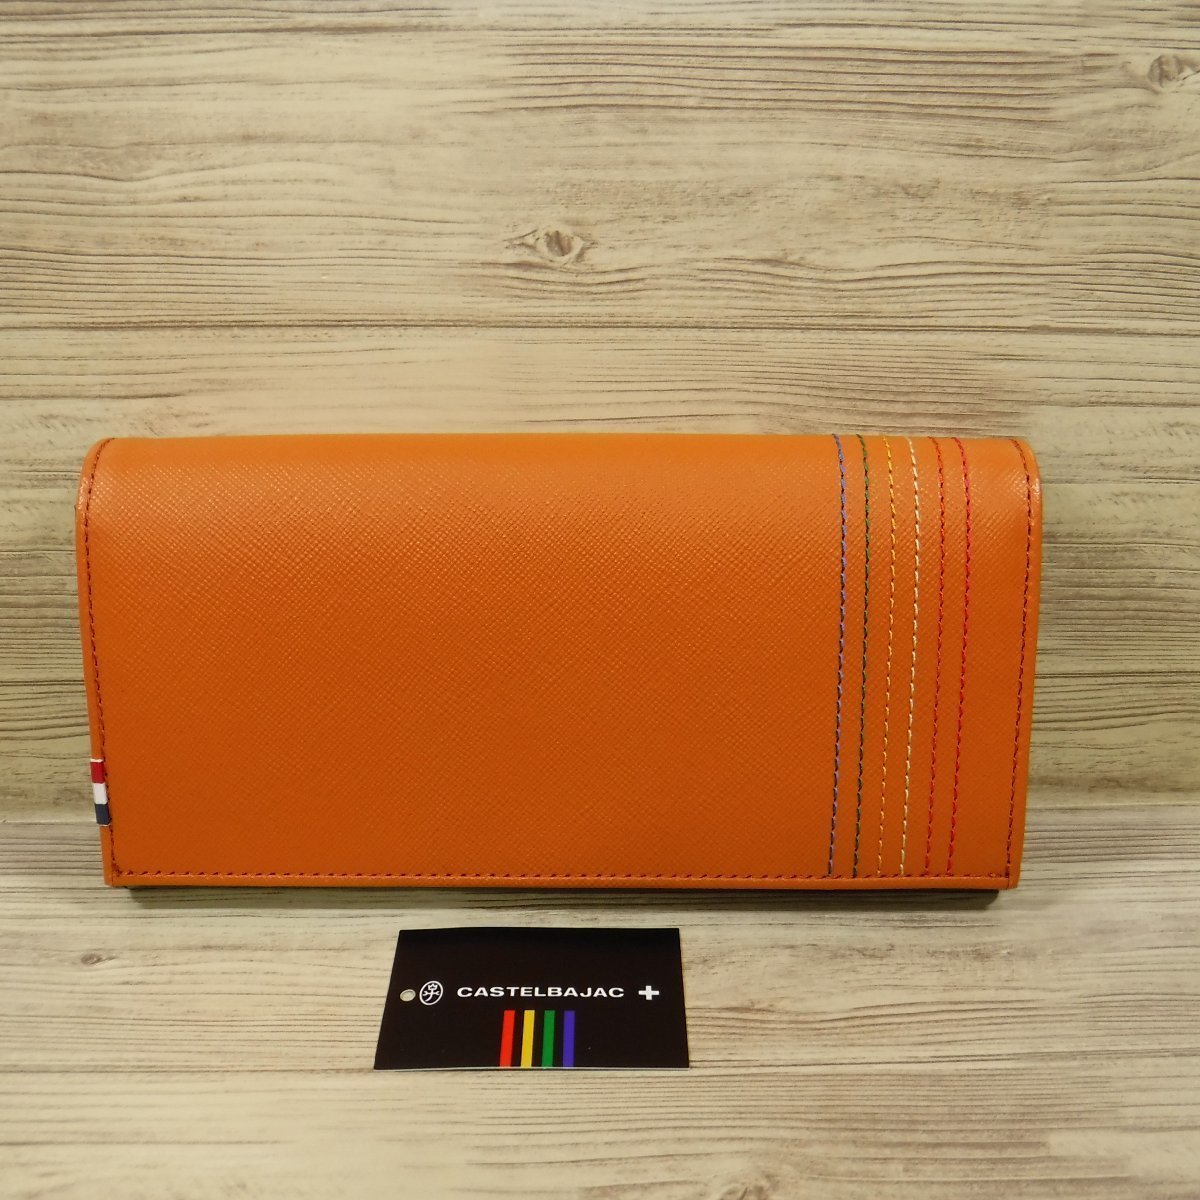 QQ839 Castelbajac новый товар обычная цена 15400 иен большая вместимость длинный кошелек safia-no style телячья кожа бумажник orange she -тактный 027604